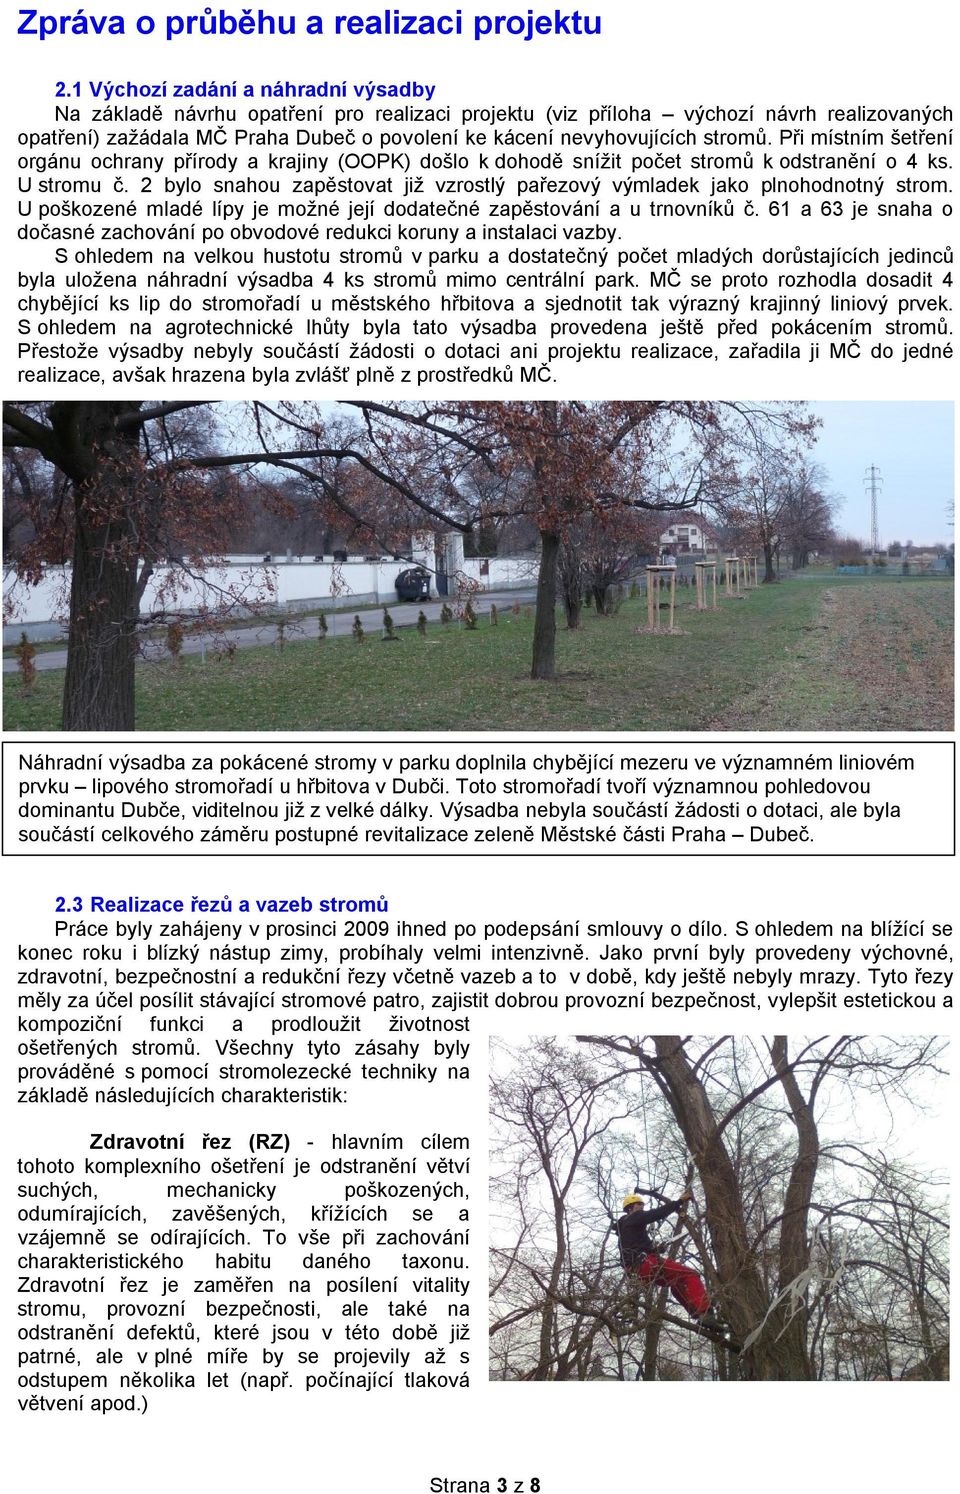 stromů. Při místním šetření orgánu ochrany přírody a krajiny (OOPK) došlo k dohodě snížit počet stromů k odstranění o 4 ks. U stromu č.